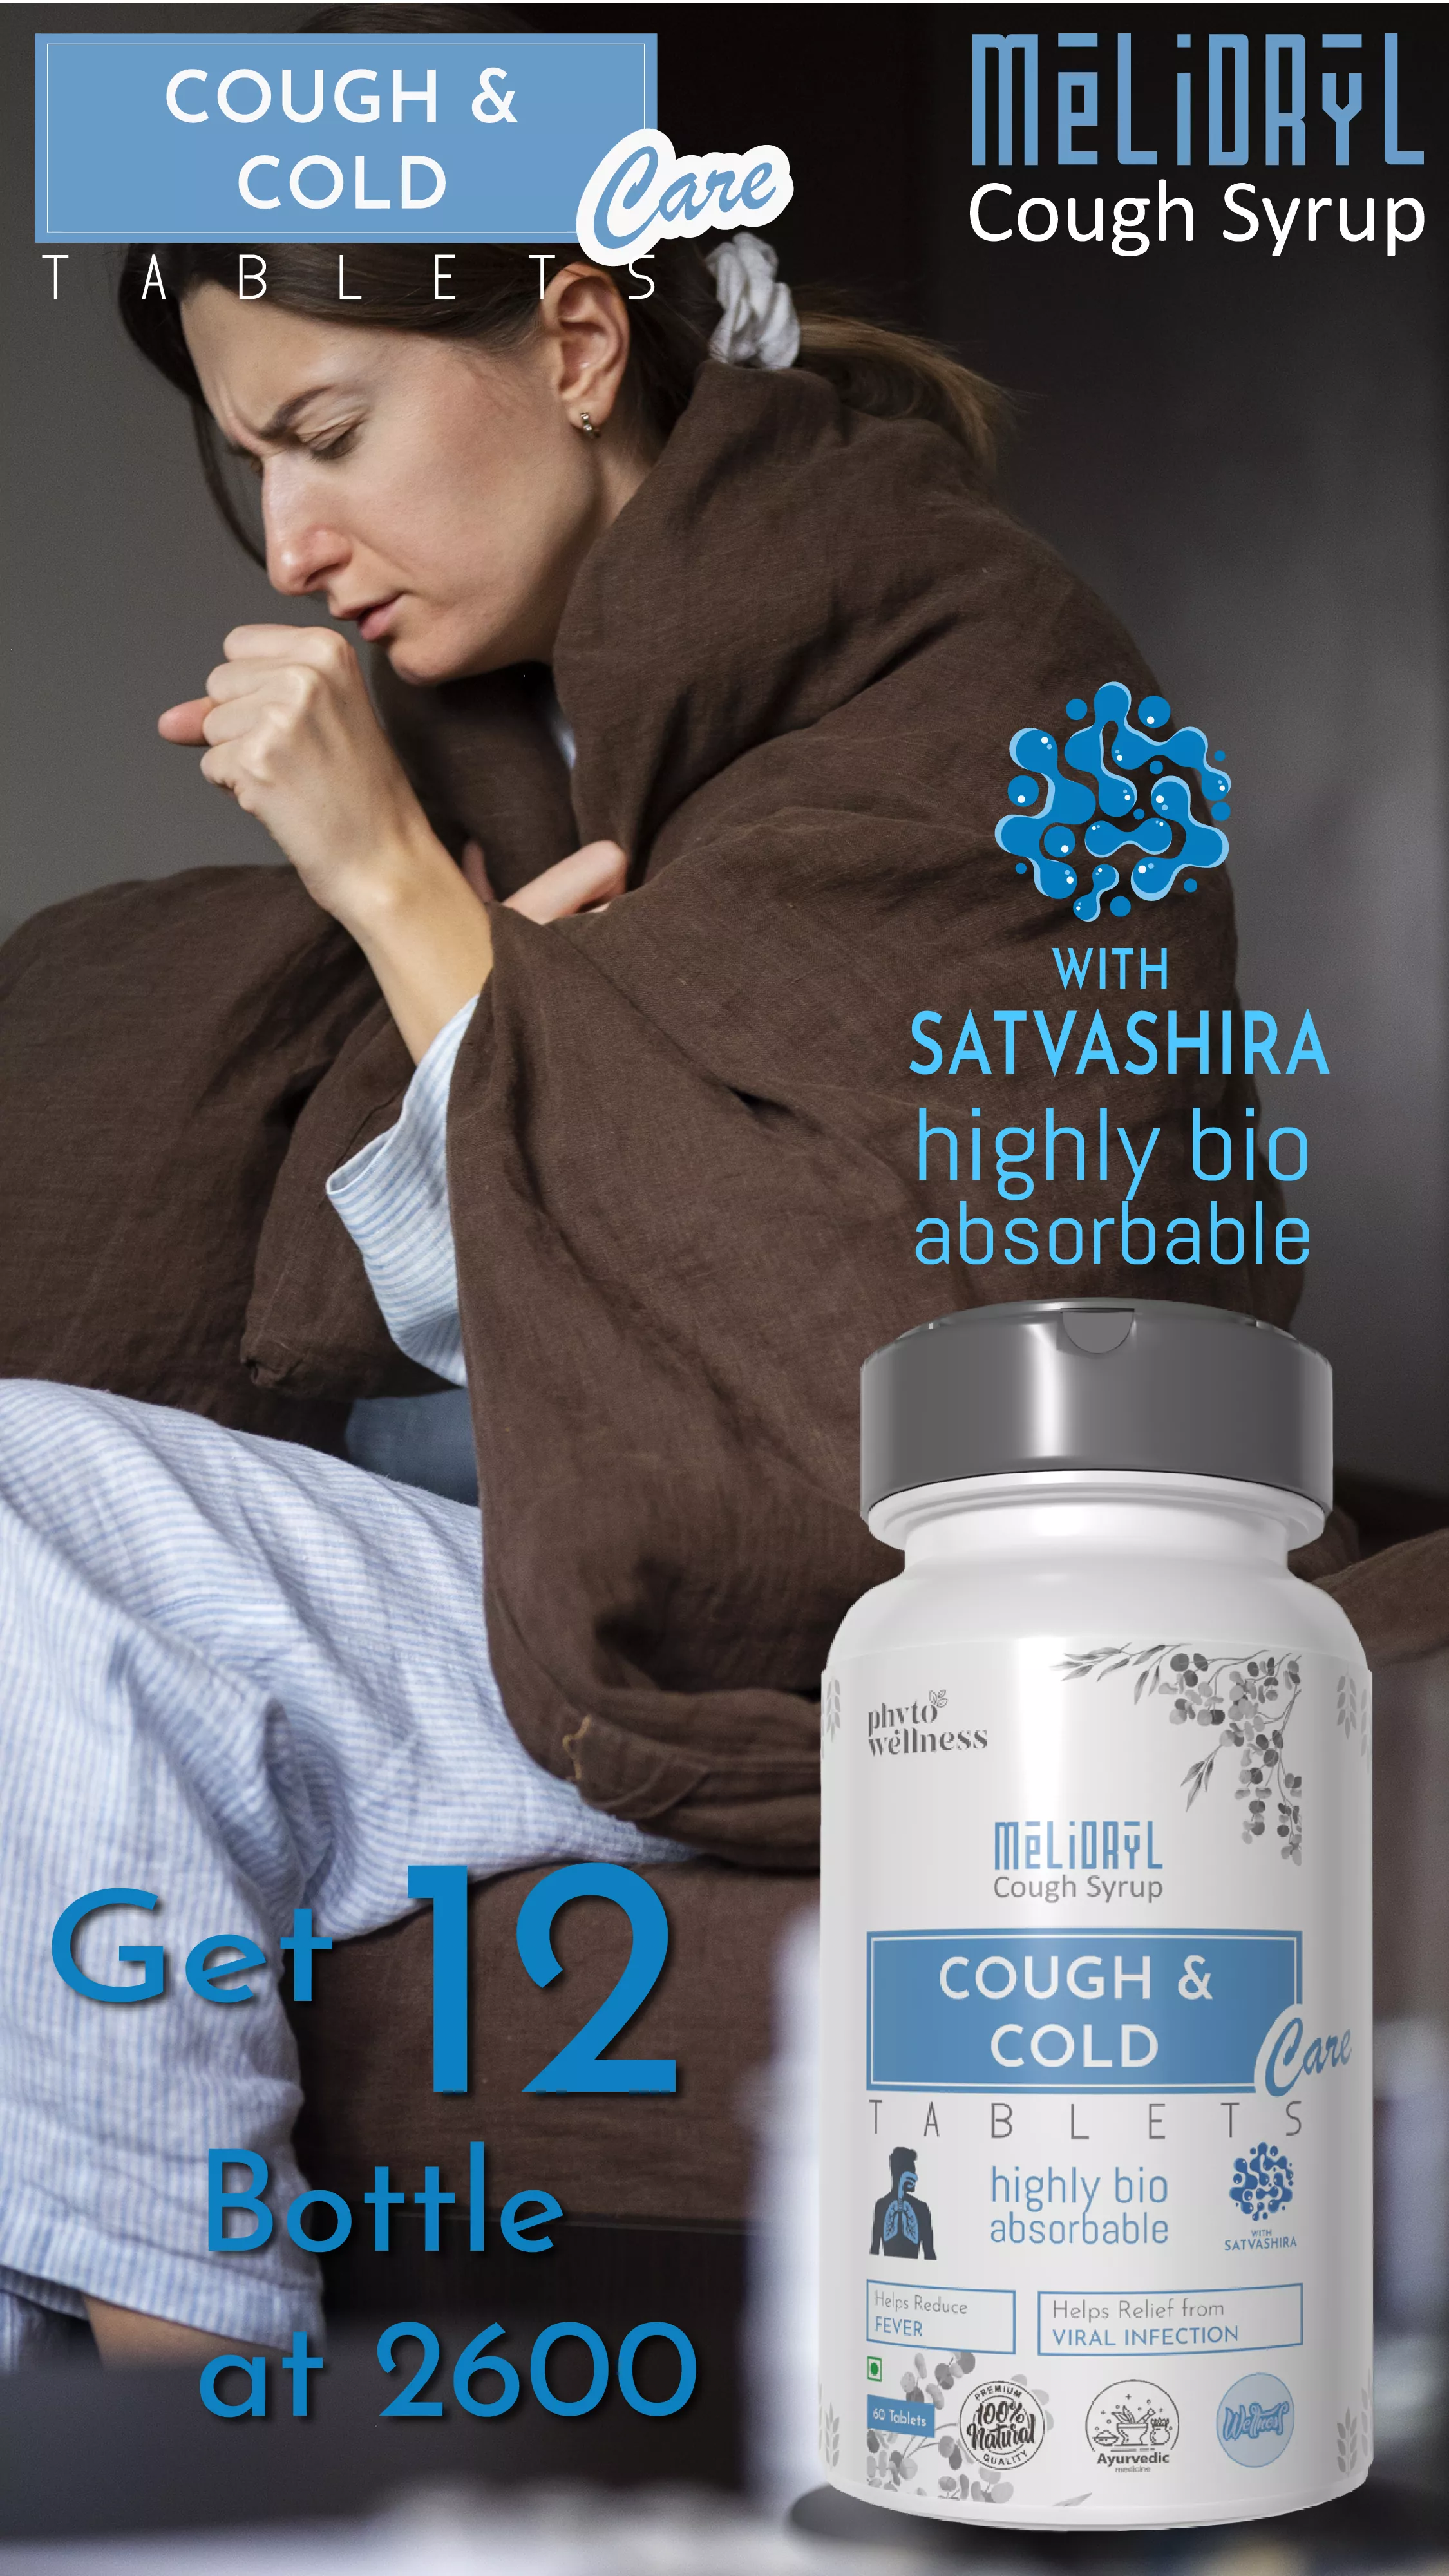 RBV B2B Probiotic Cough Care 60 Tablets 12 Pcs.